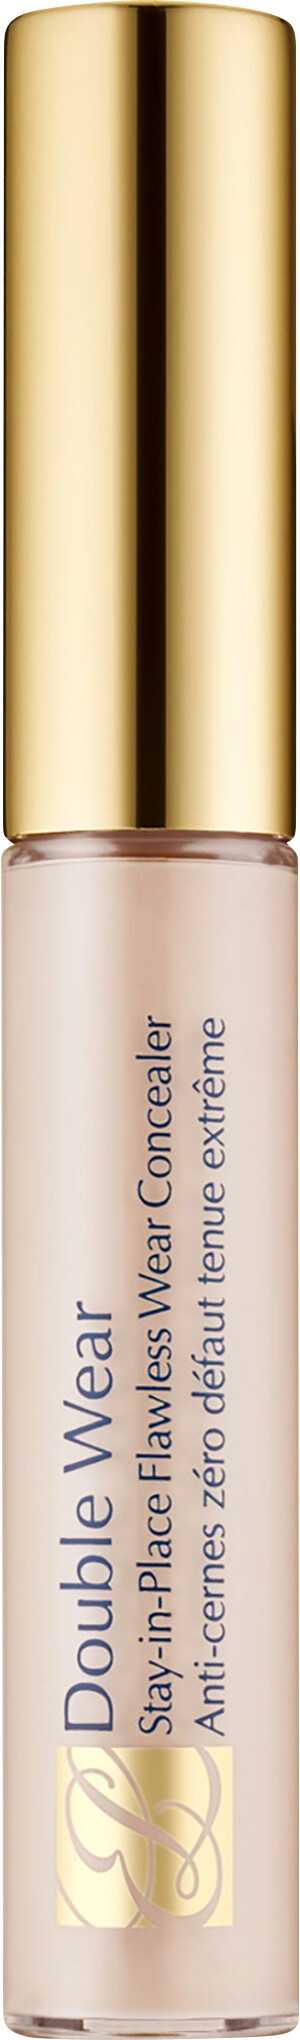 Estee Lauder Double Wear Stay-In-Place Flawless Wear Concealer 7ml 0.5N - Ultra Light